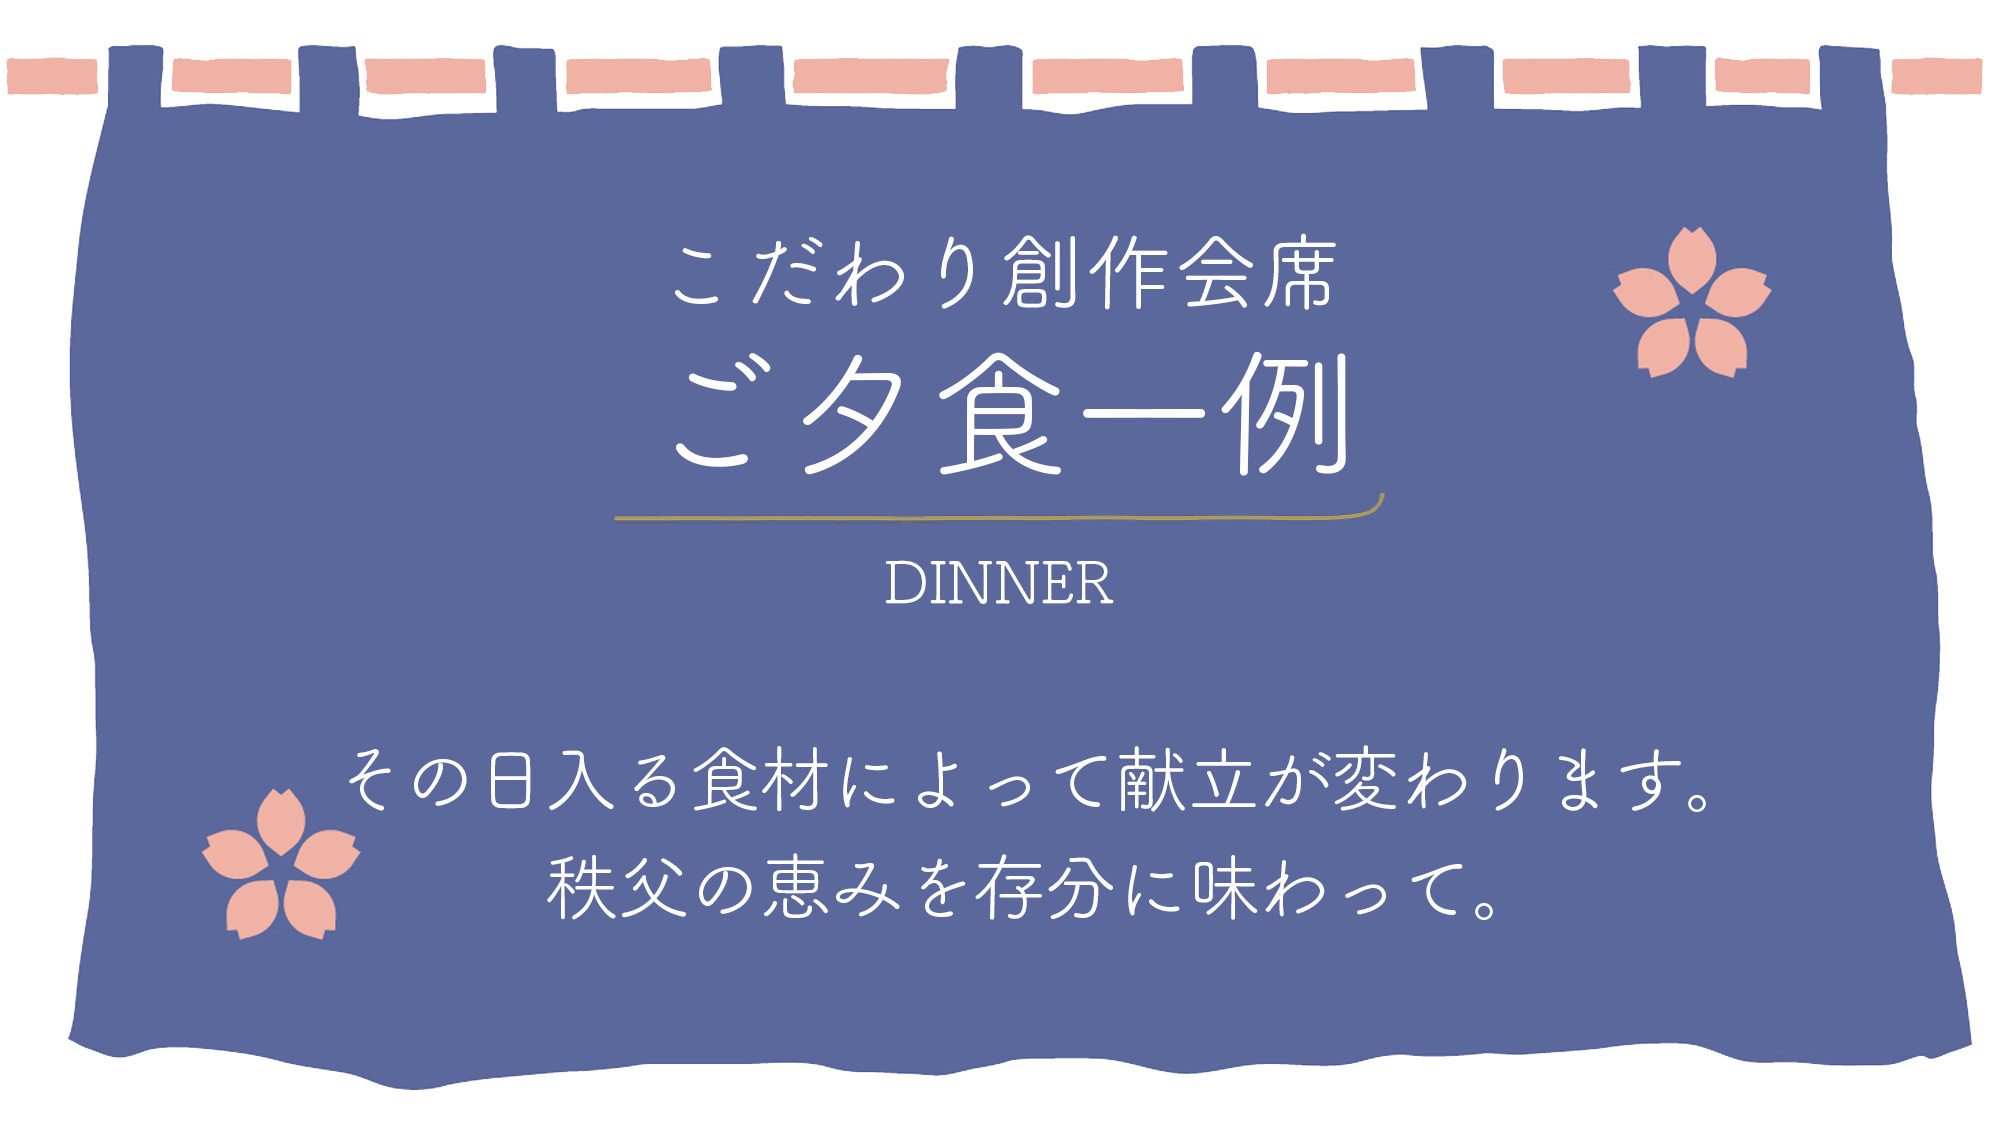 【ご夕食一例】秩父で採れる食材を活かして・・・川魚と地元野菜が中心の献立です